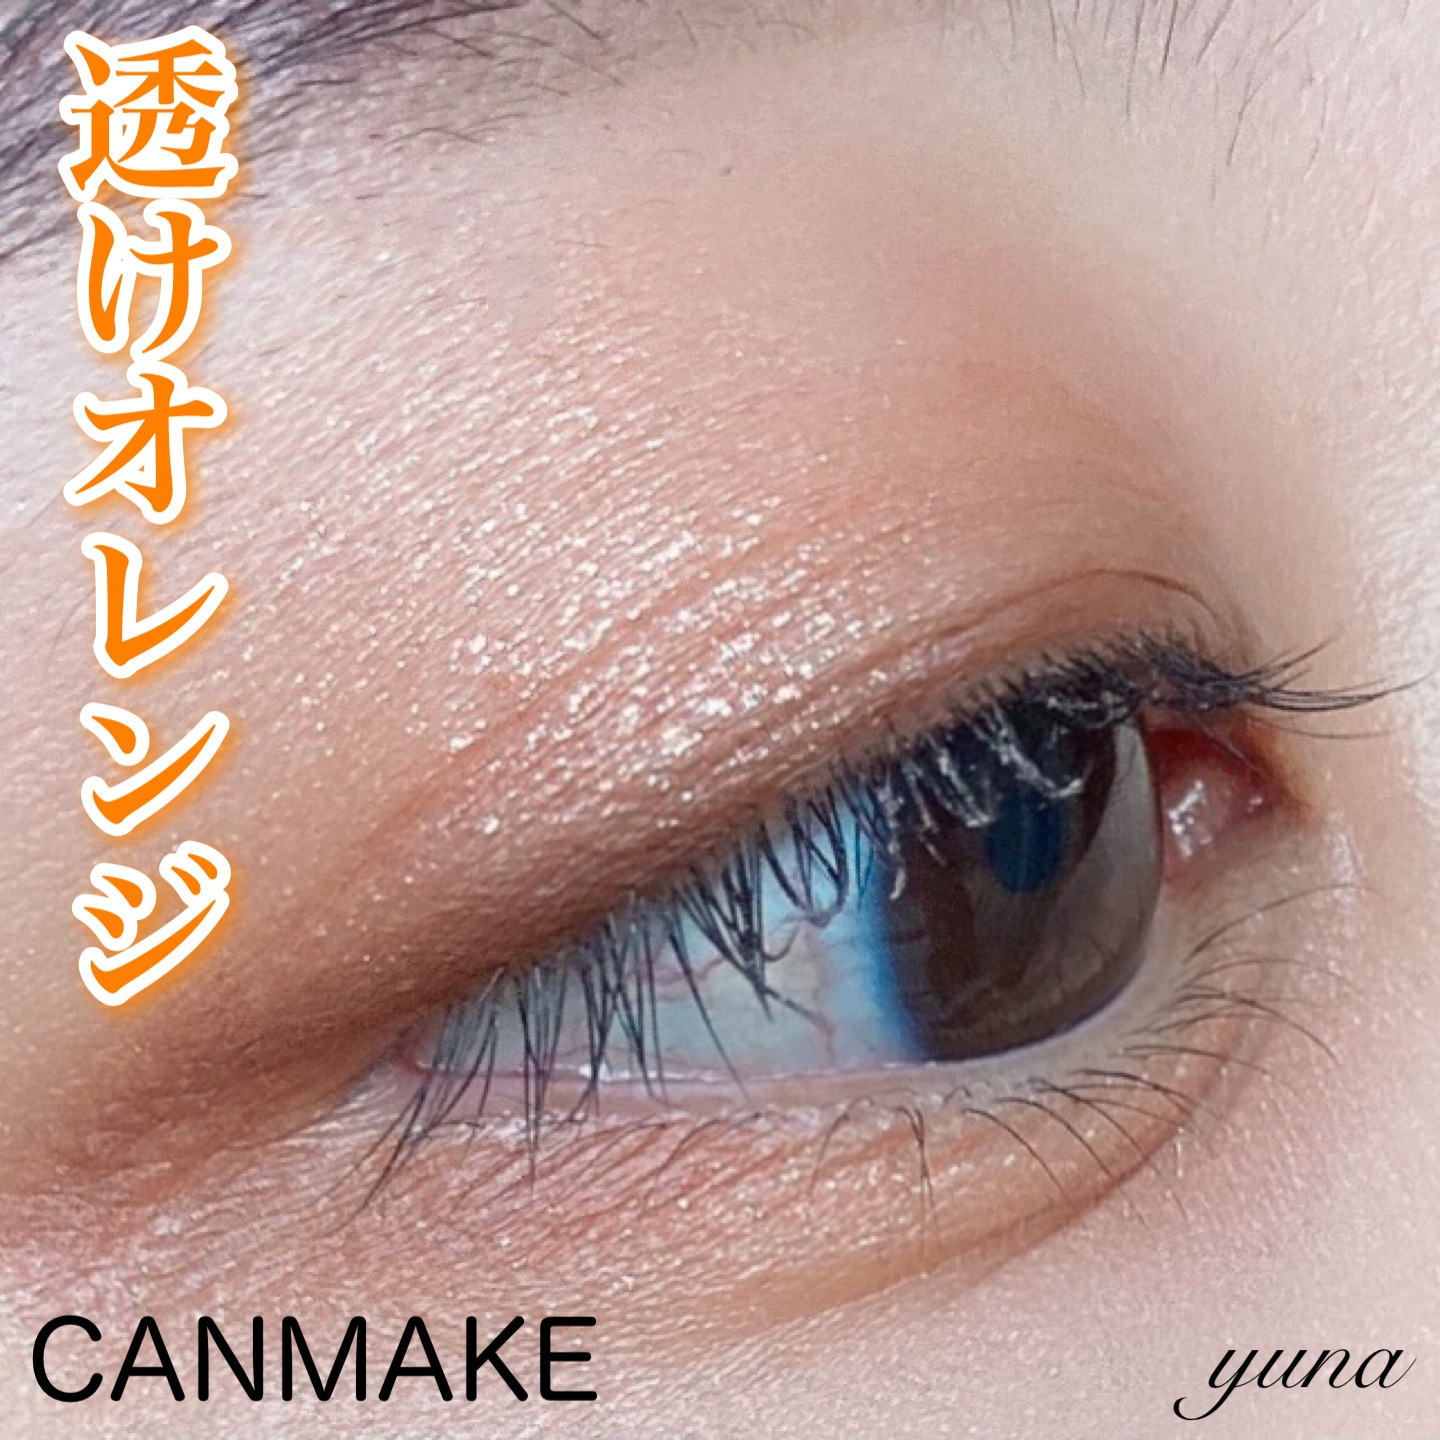 CANMAKE(キャンメイク) シルキースフレアイズの良い点・メリットに関するyunaさんの口コミ画像1